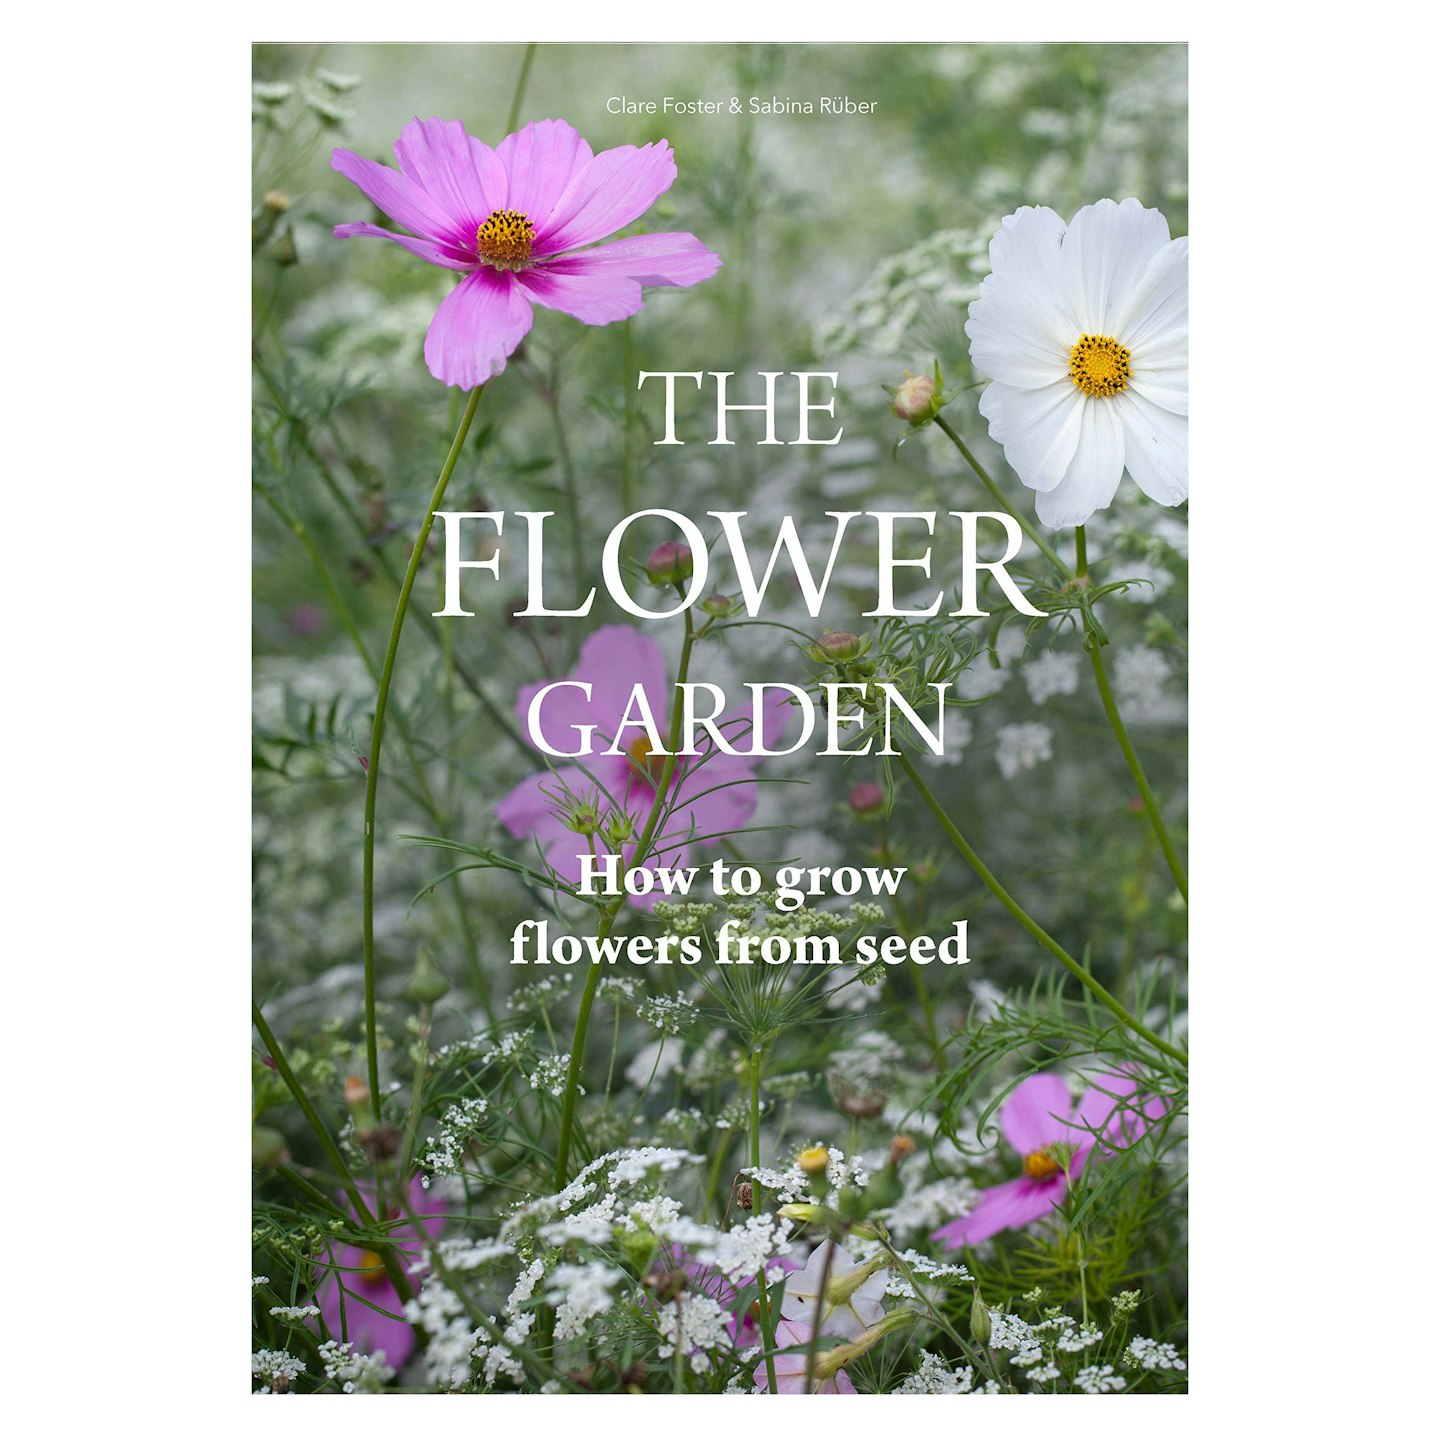 Flower Garden by Clare Foster